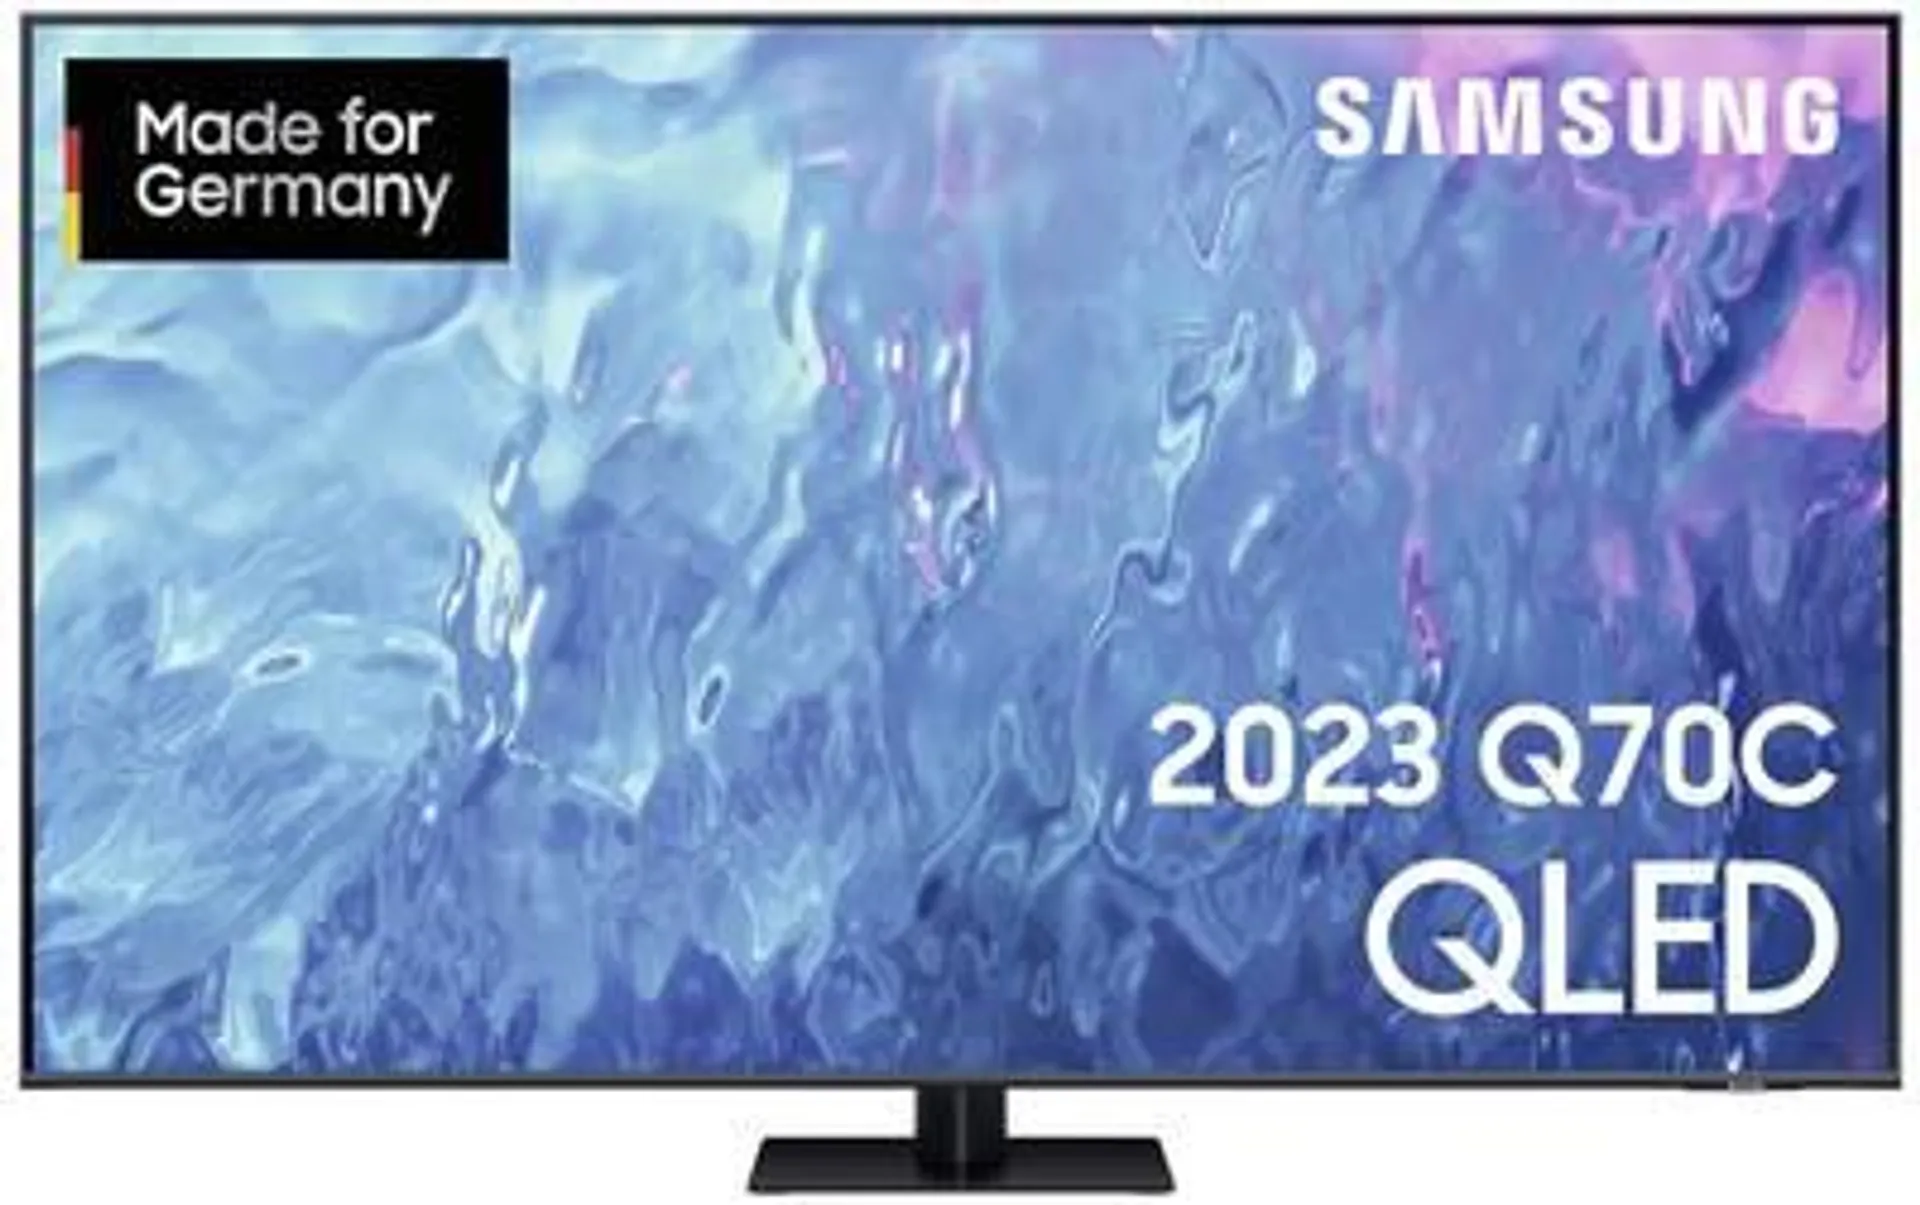 Samsung QLED 4K Q70C QLED TV 163 cm 65 inch EEC F (A - G) CI+, DVB-C, DVB-S2, DVB-T2 HD, QLED, Smart TV, UHD, Wi-Fi Tita